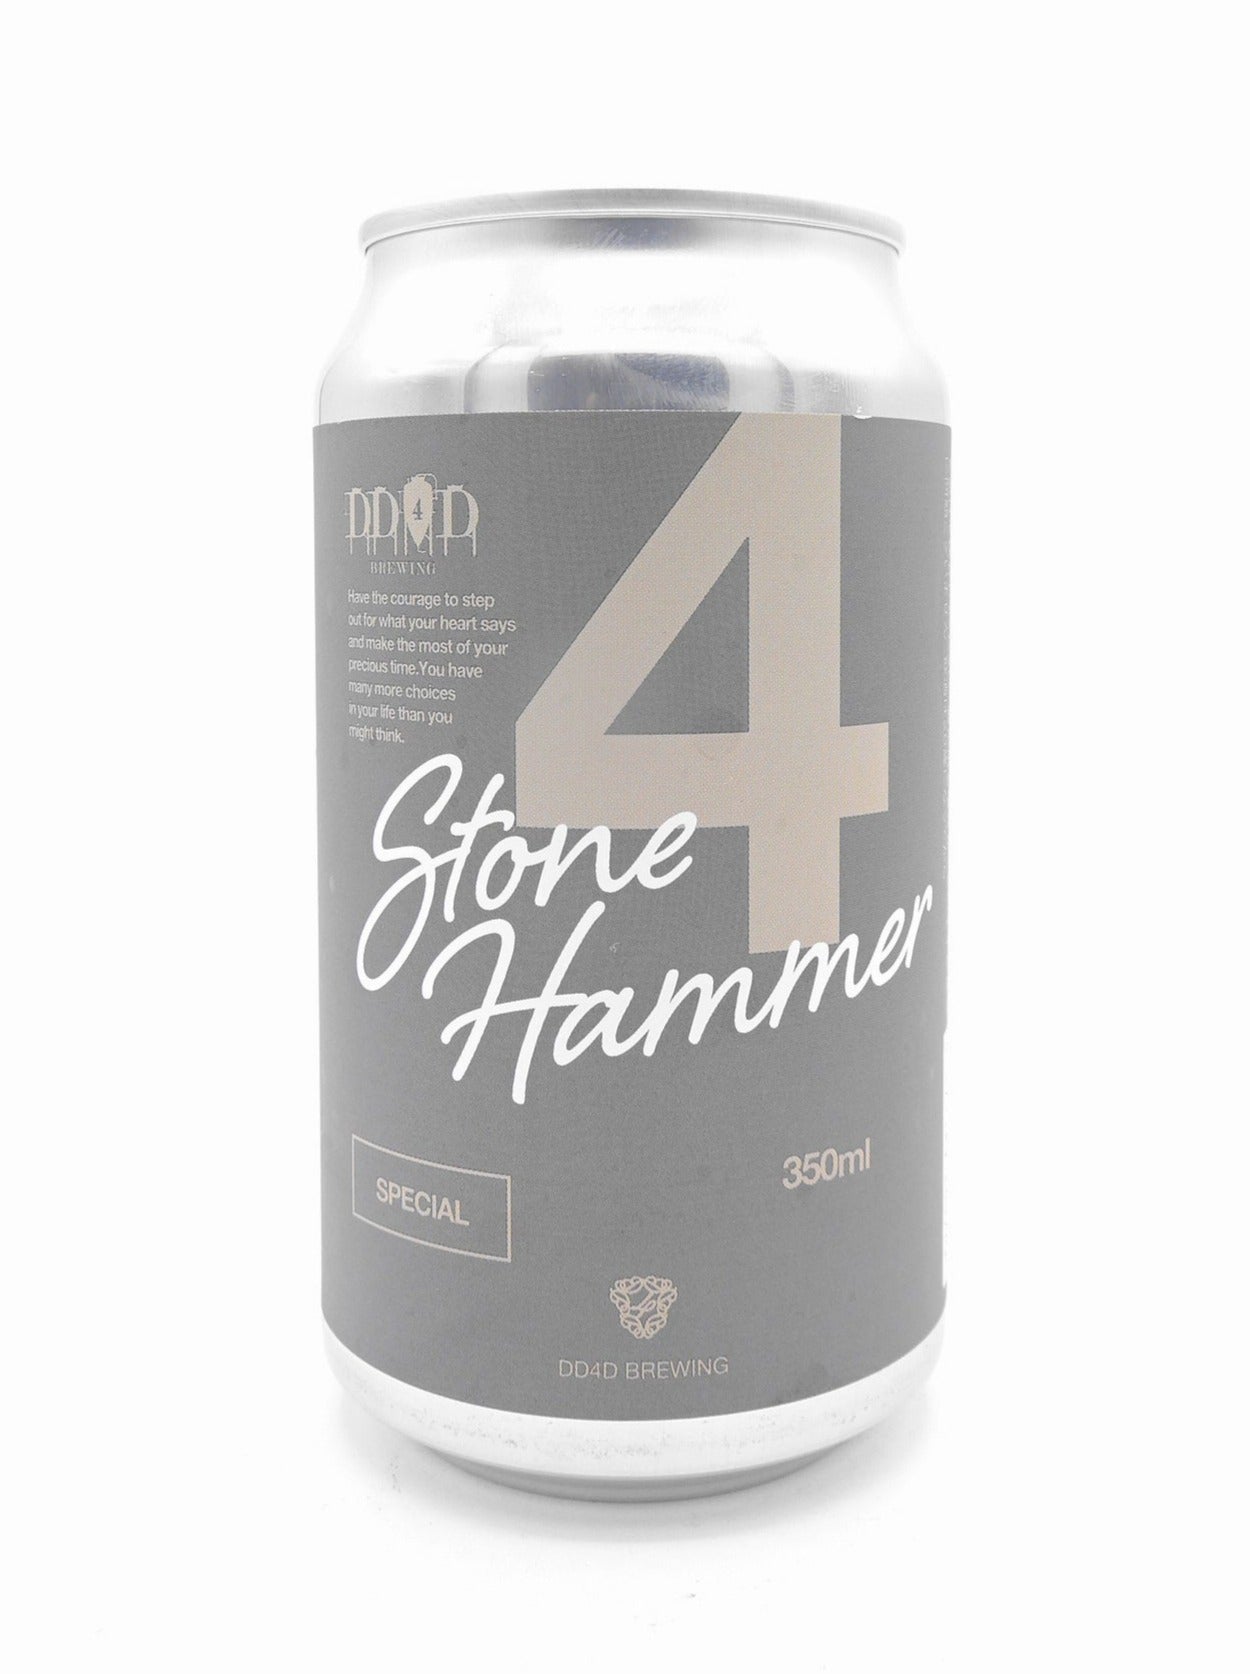 Stone Hammer（Double IPA）